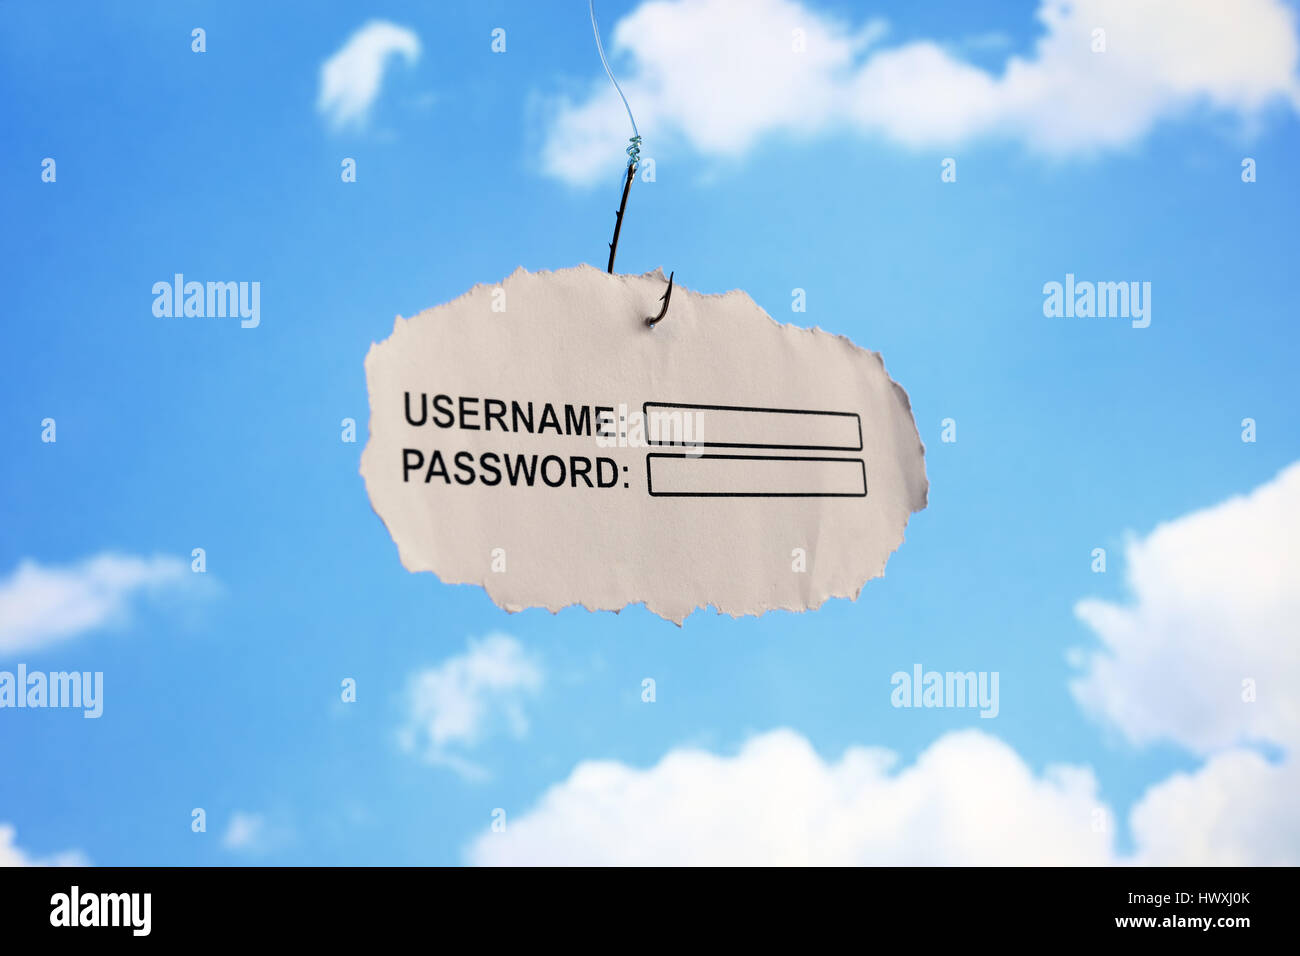 Computer login Nome utente e la password su un foglio di carta attaccato ad un concetto di gancio per il phishing o internet security Foto Stock